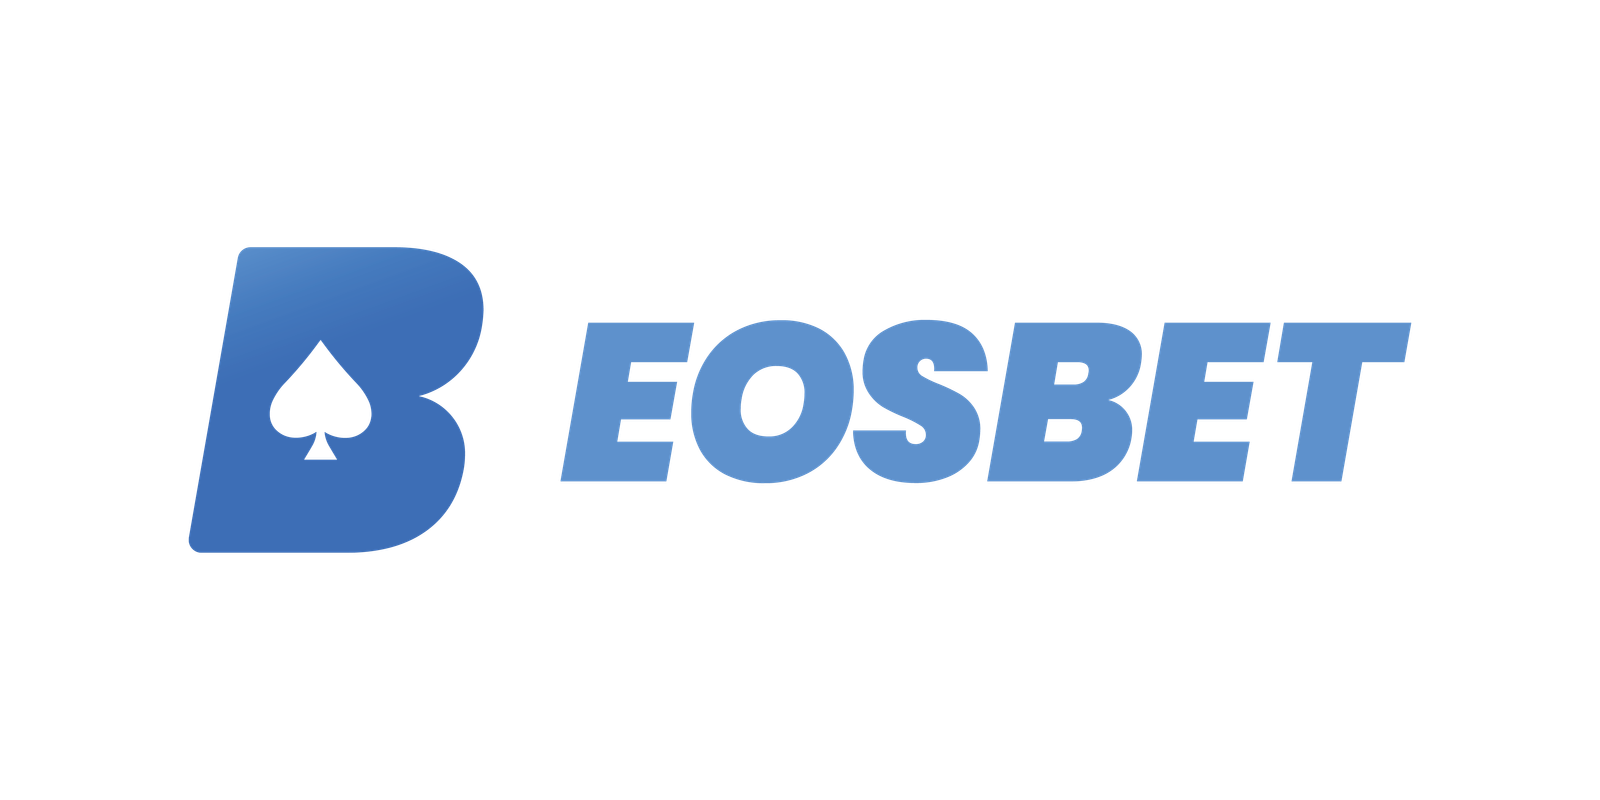 EOSBet